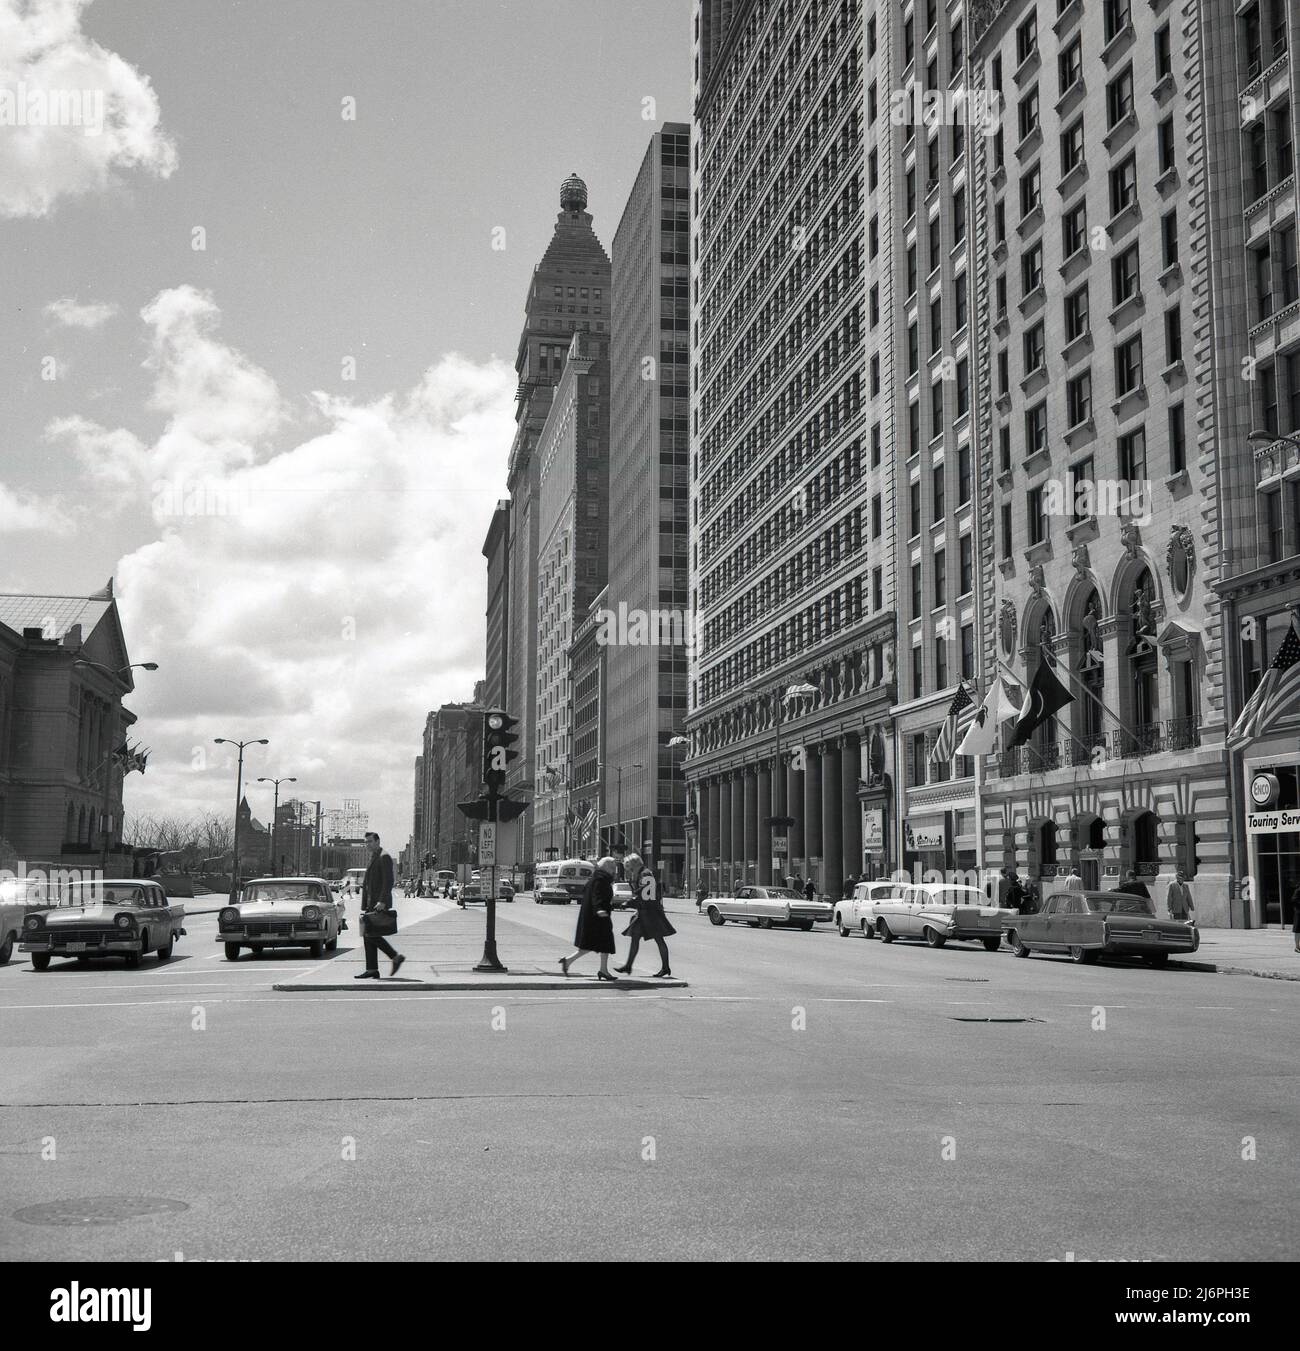 1950s, historische Ansicht entlang der North Michigan Ave, Chicago, USA. Diese berühmte Straße im Stadtzentrum, die gemeinhin als Magnificent Mile bekannt ist, ist eine der großen Alleen der Welt Stockfoto